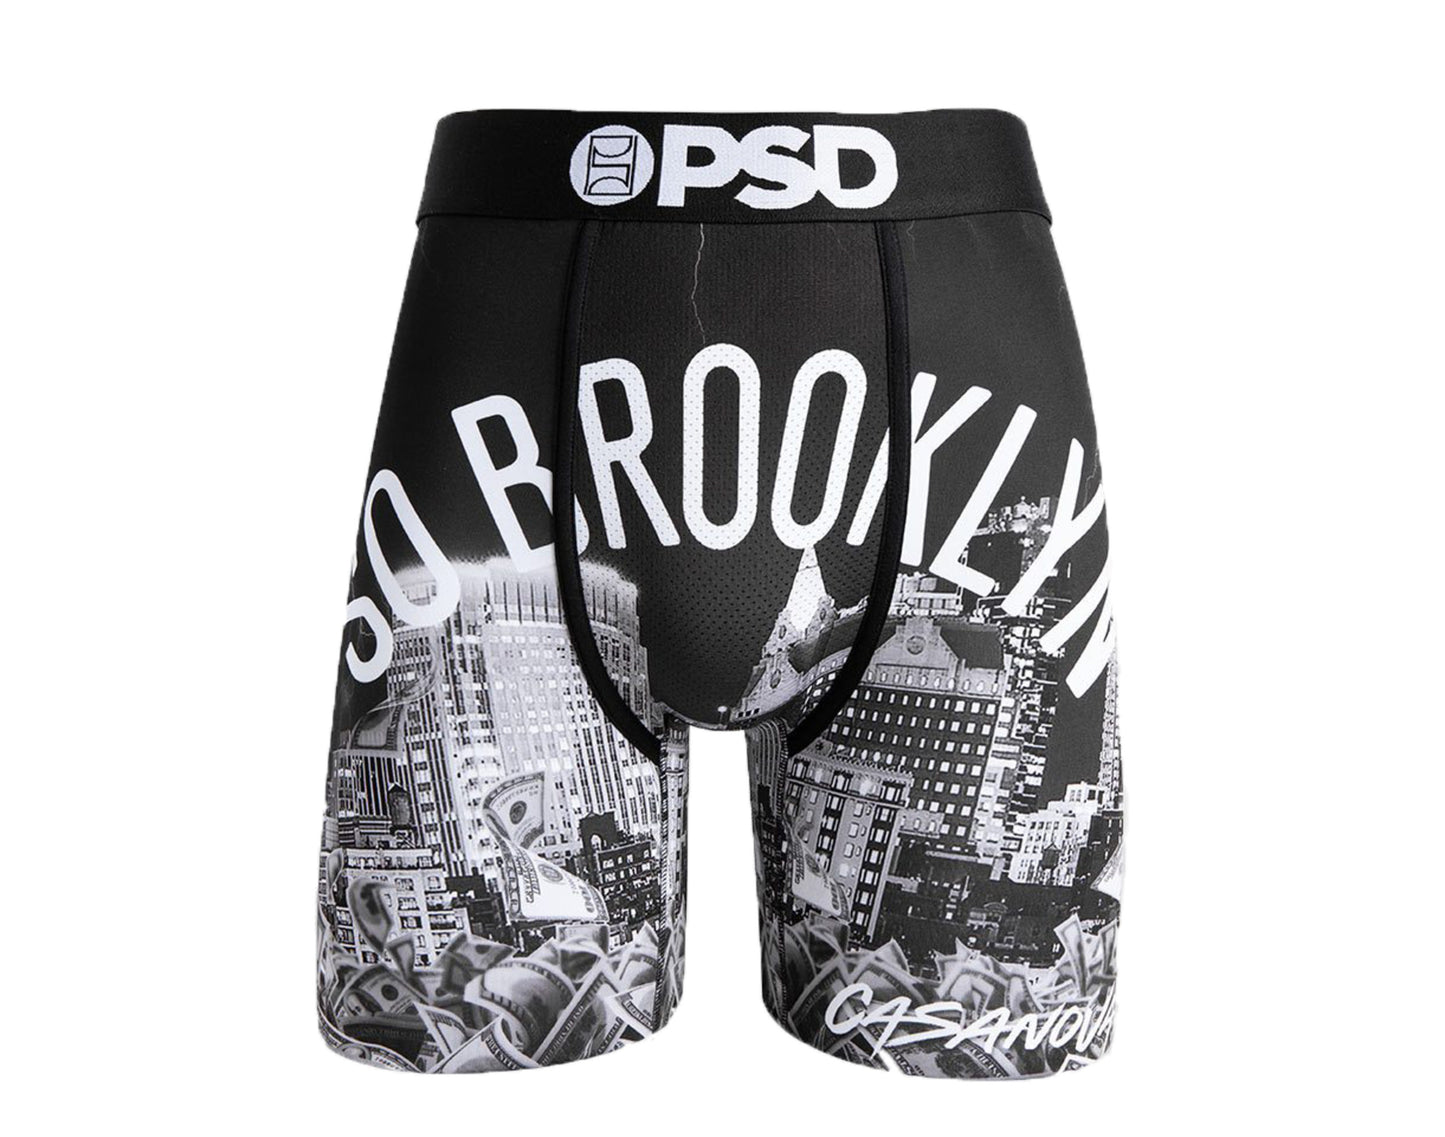 PSD Casanova 2X Boxer Briefs Men's Underwear